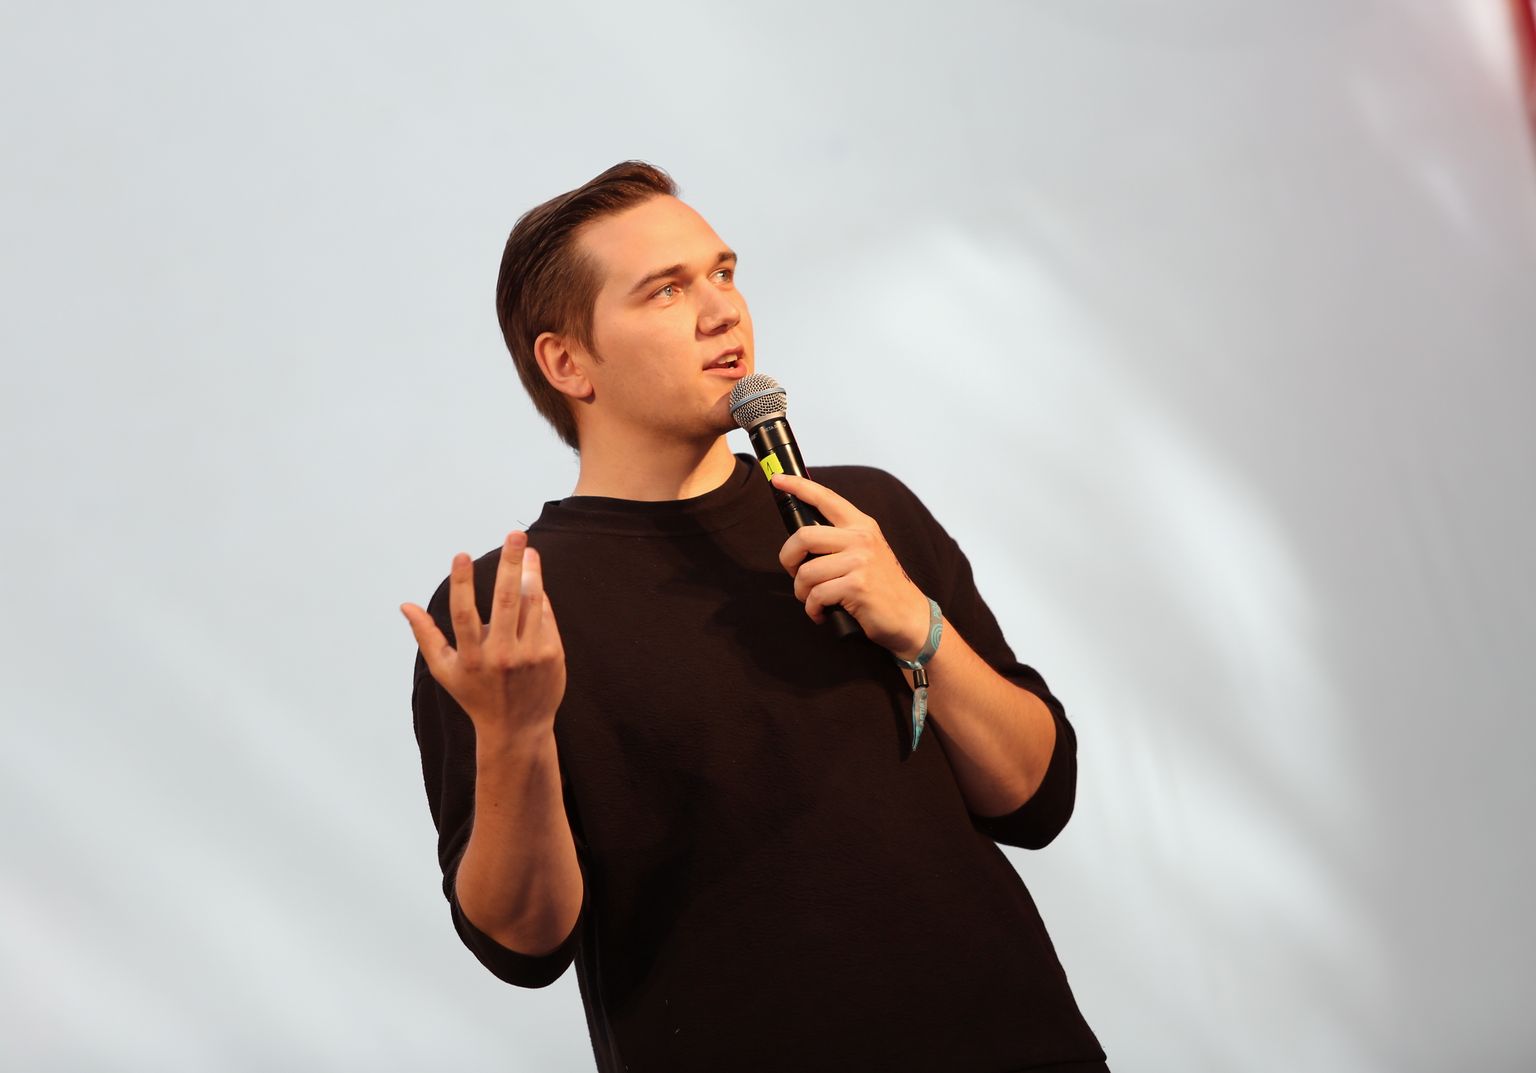 Komiķis Kalvis Troska uzstājās festivālā "Positivus" Salacgrīvā.